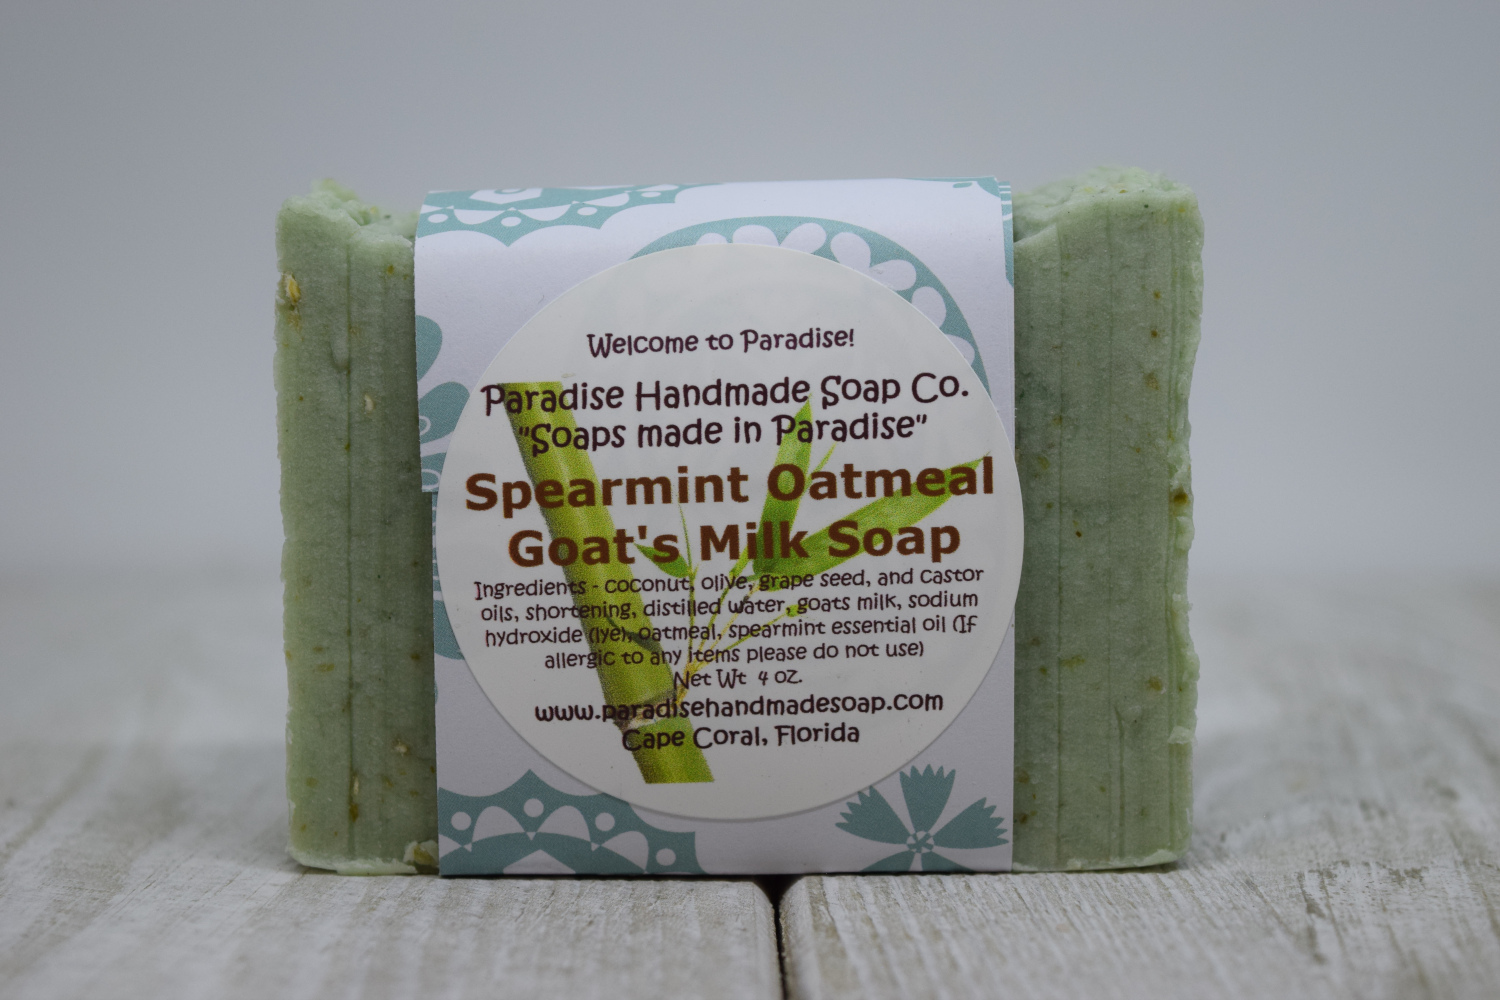 Spearmint Oatmeal Goat’s Milk Soap